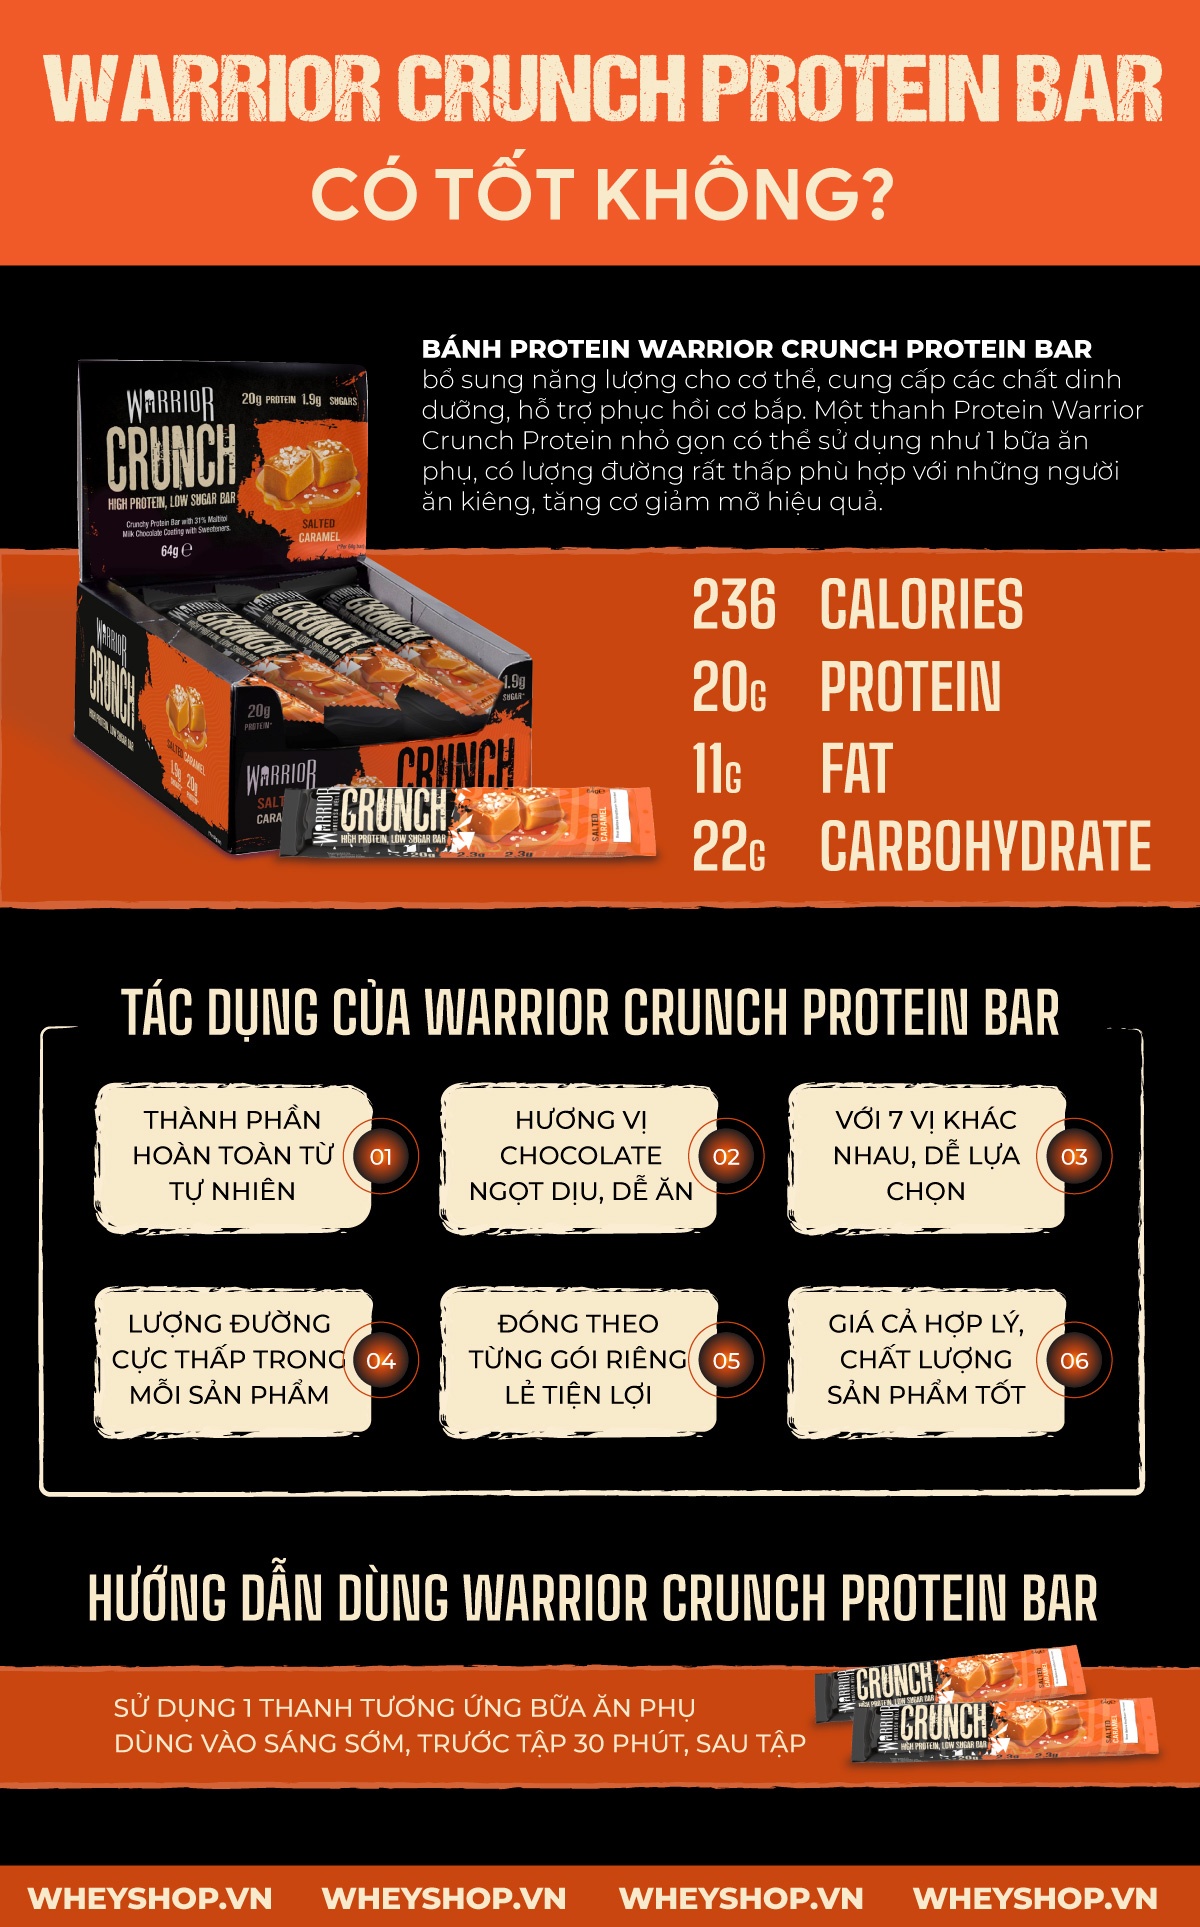 Thường xuyên ăn vặt là thói quen xấu, nhưng ăn vặt bằng thanh bánh Warrior lại tốt. Hãy cùng WheyShop đánh giá Warrior Crunch Protein Bar có tốt không nhé!